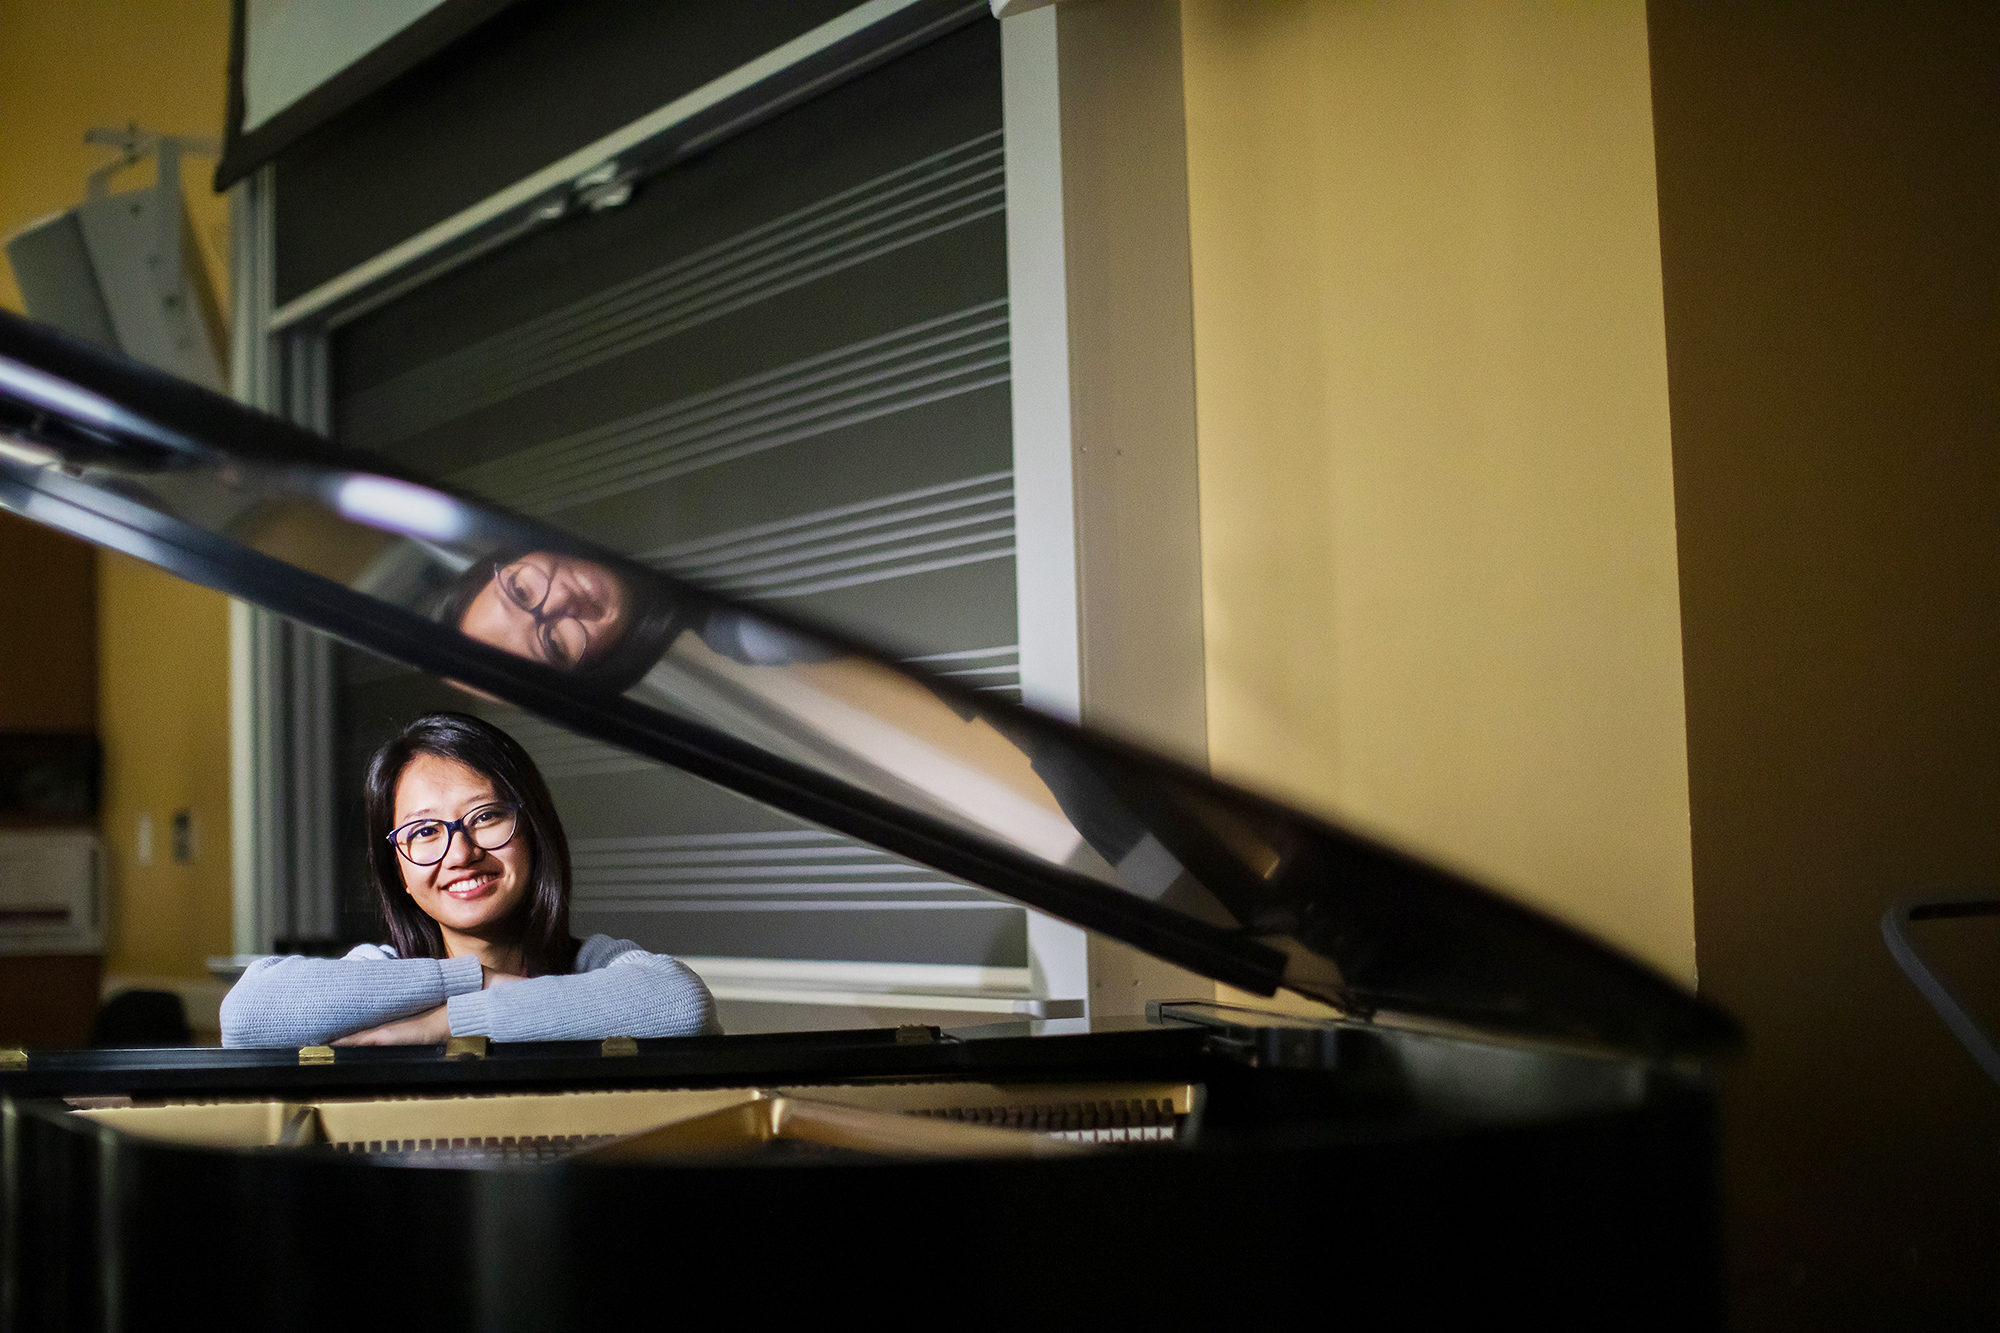 Cô gái gốc Việt thành nhà soạn nhạc kiêm nghệ sĩ dương cầm thành công trên đất Mỹ